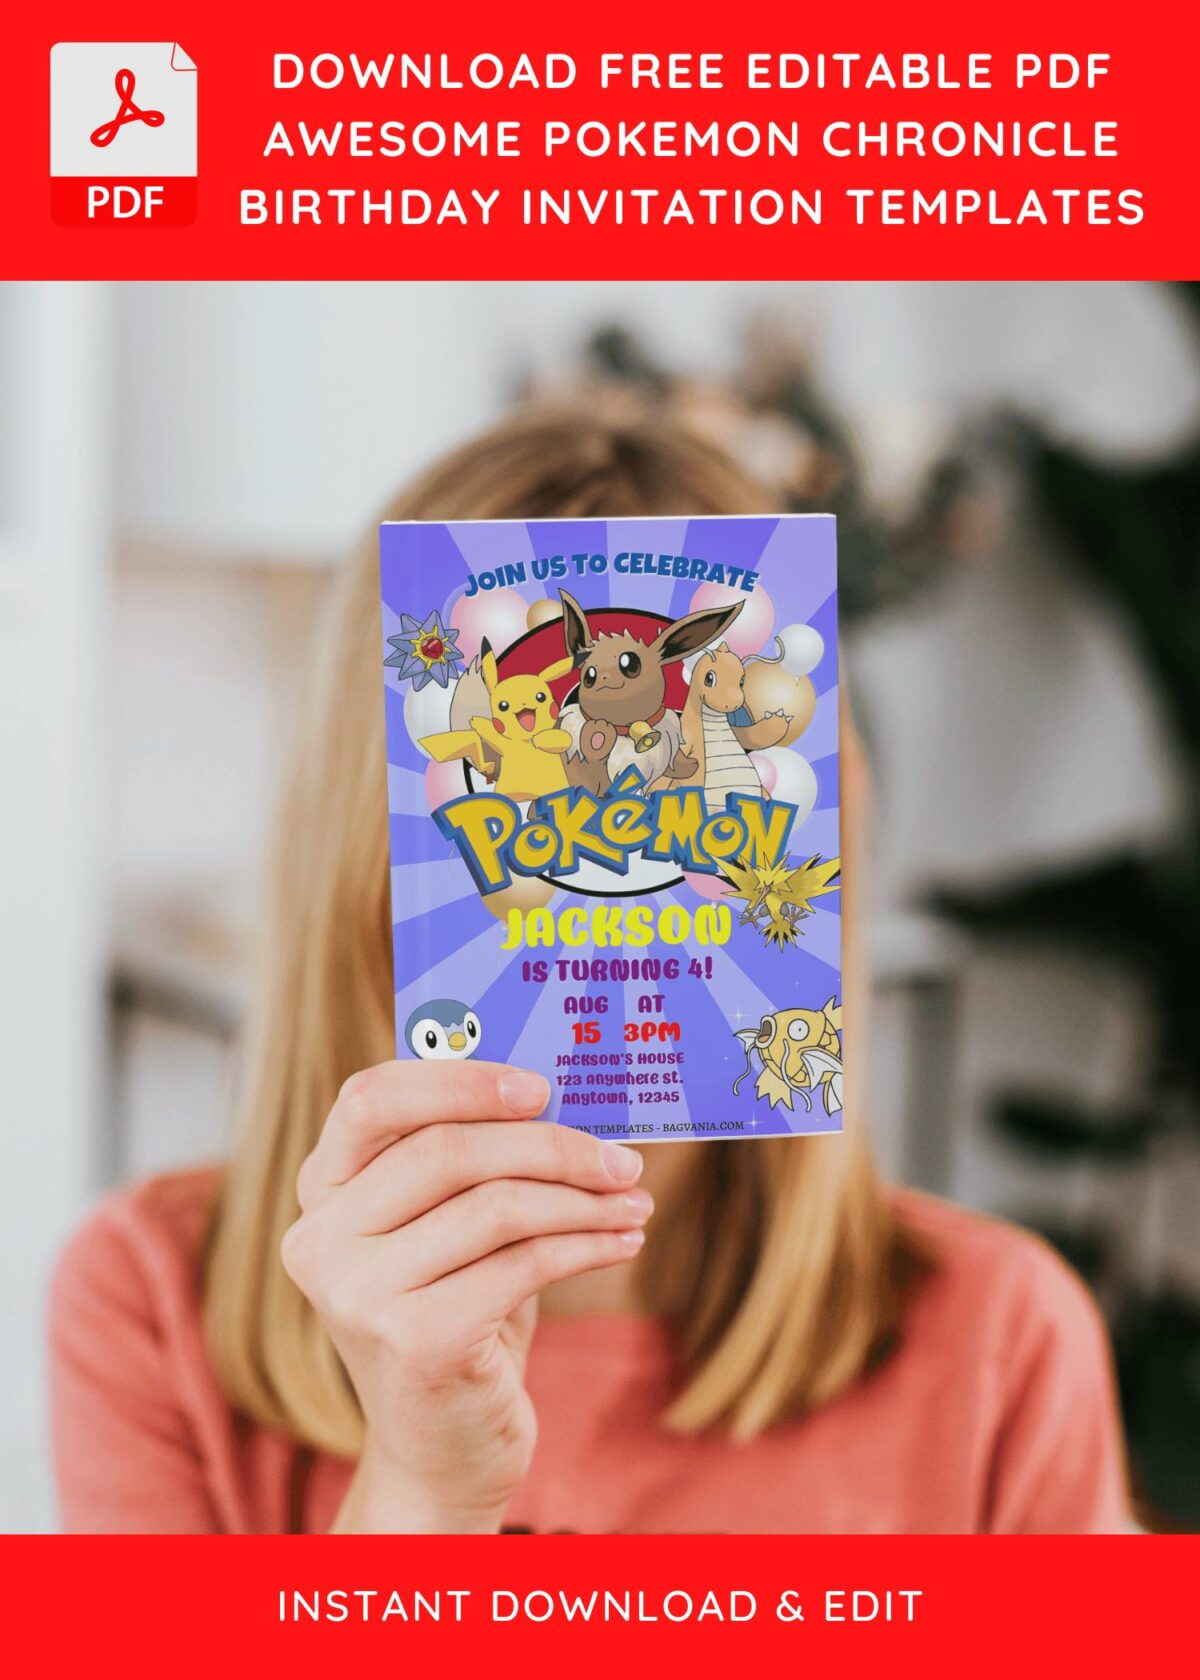 (Free Editable PDF) Epic Pokémon Chronicle Birthday Invitation Templates with Pokemon logo